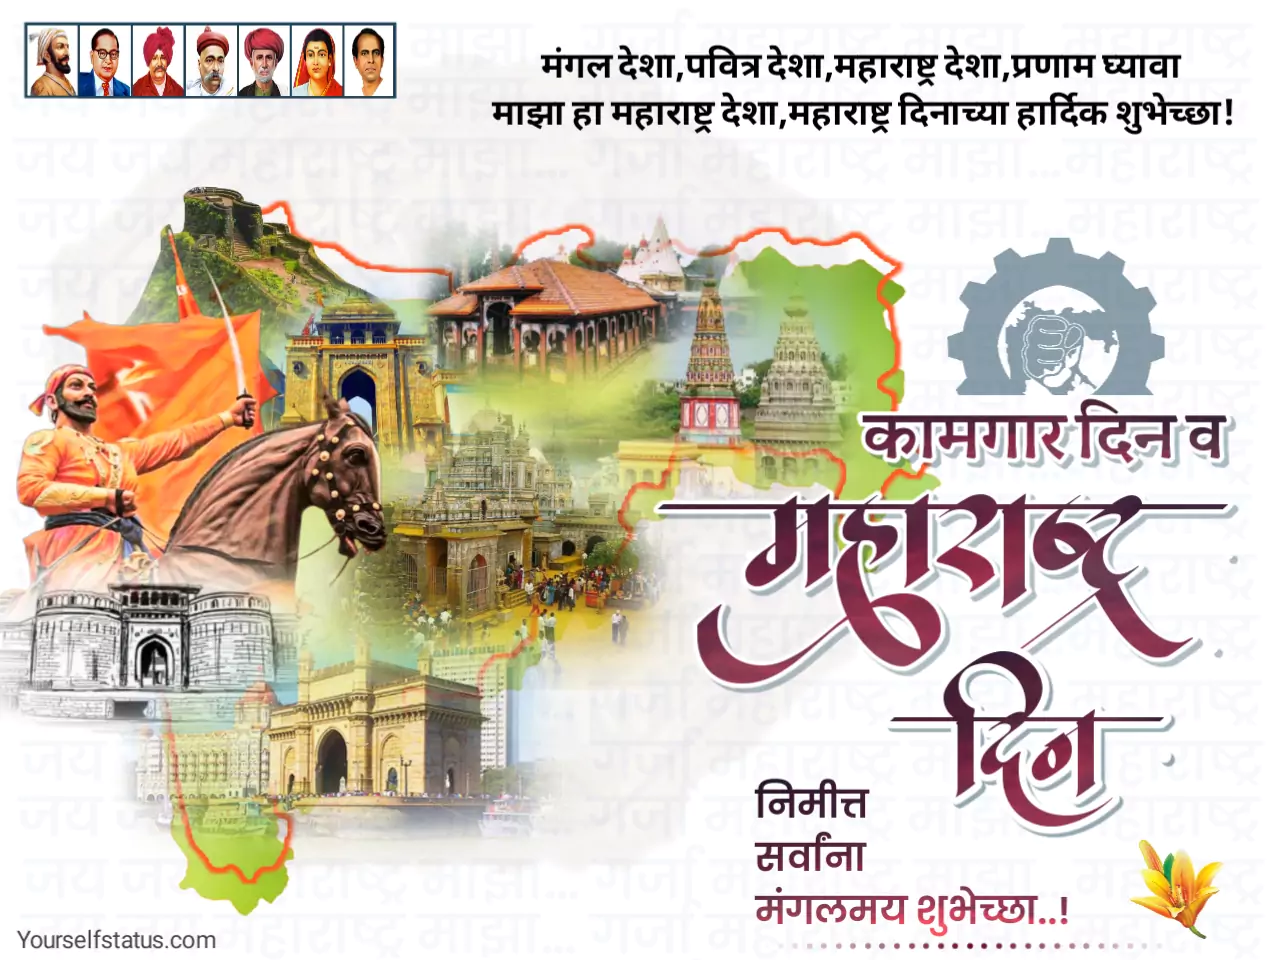 Maharashtra day wishes in marathi